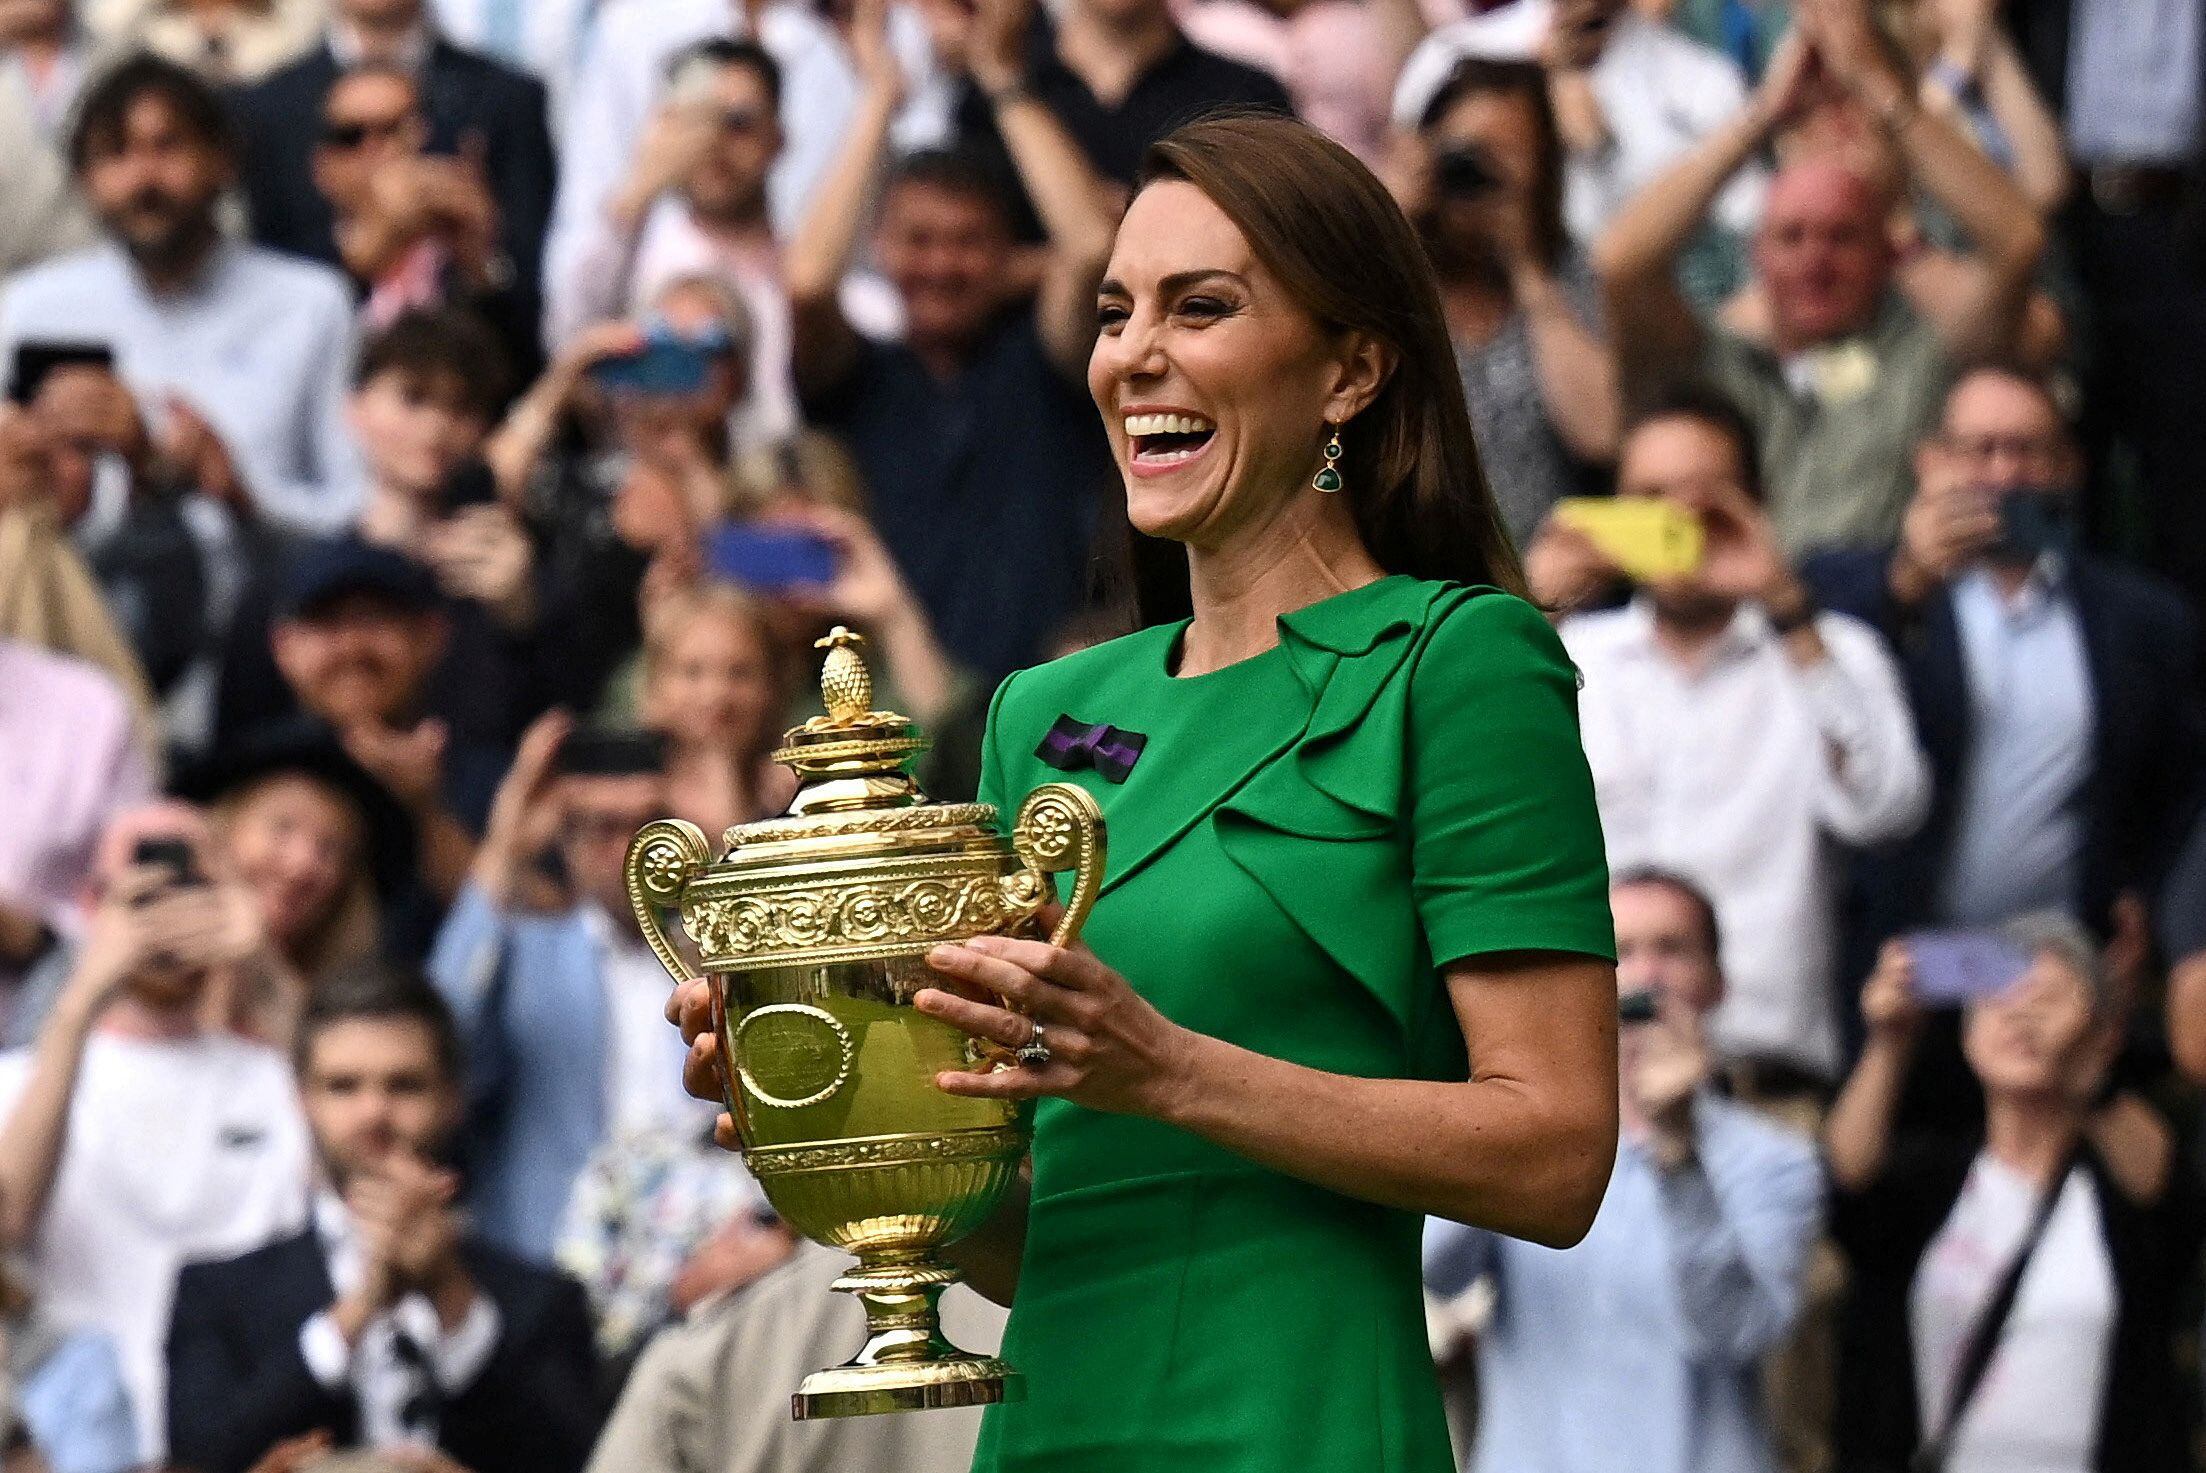 La final de Wimbledon entre Carlos Alcaraz y Novak Djokovic, el pasado domingo, reunió en Londres a decenas de personalidades del mundo de la realeza, la música y el cine. Un partido que tuvo una duración de casi cinco horas y que terminó con el español revalidando su primer puesto en el 'ranking' mundial del tenis. La princesa de Gales, Kate Middleton, fue la encargada de entregar el trofeo al tenista.